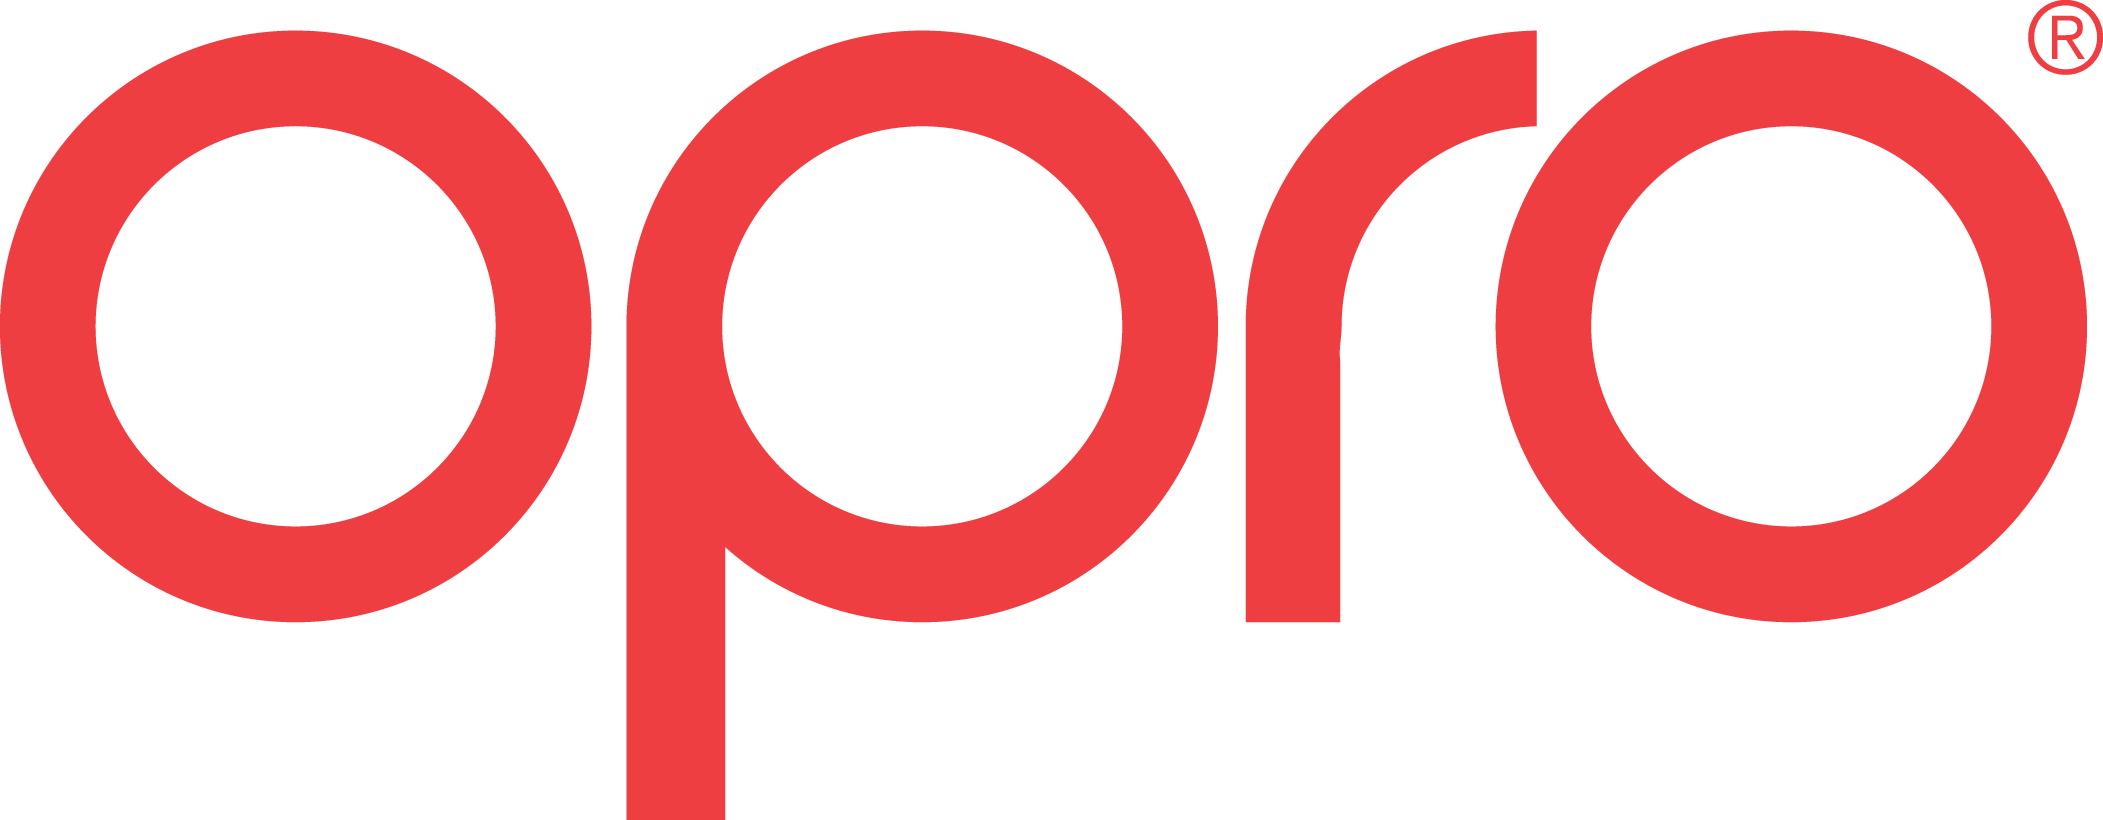 OPRO logo red